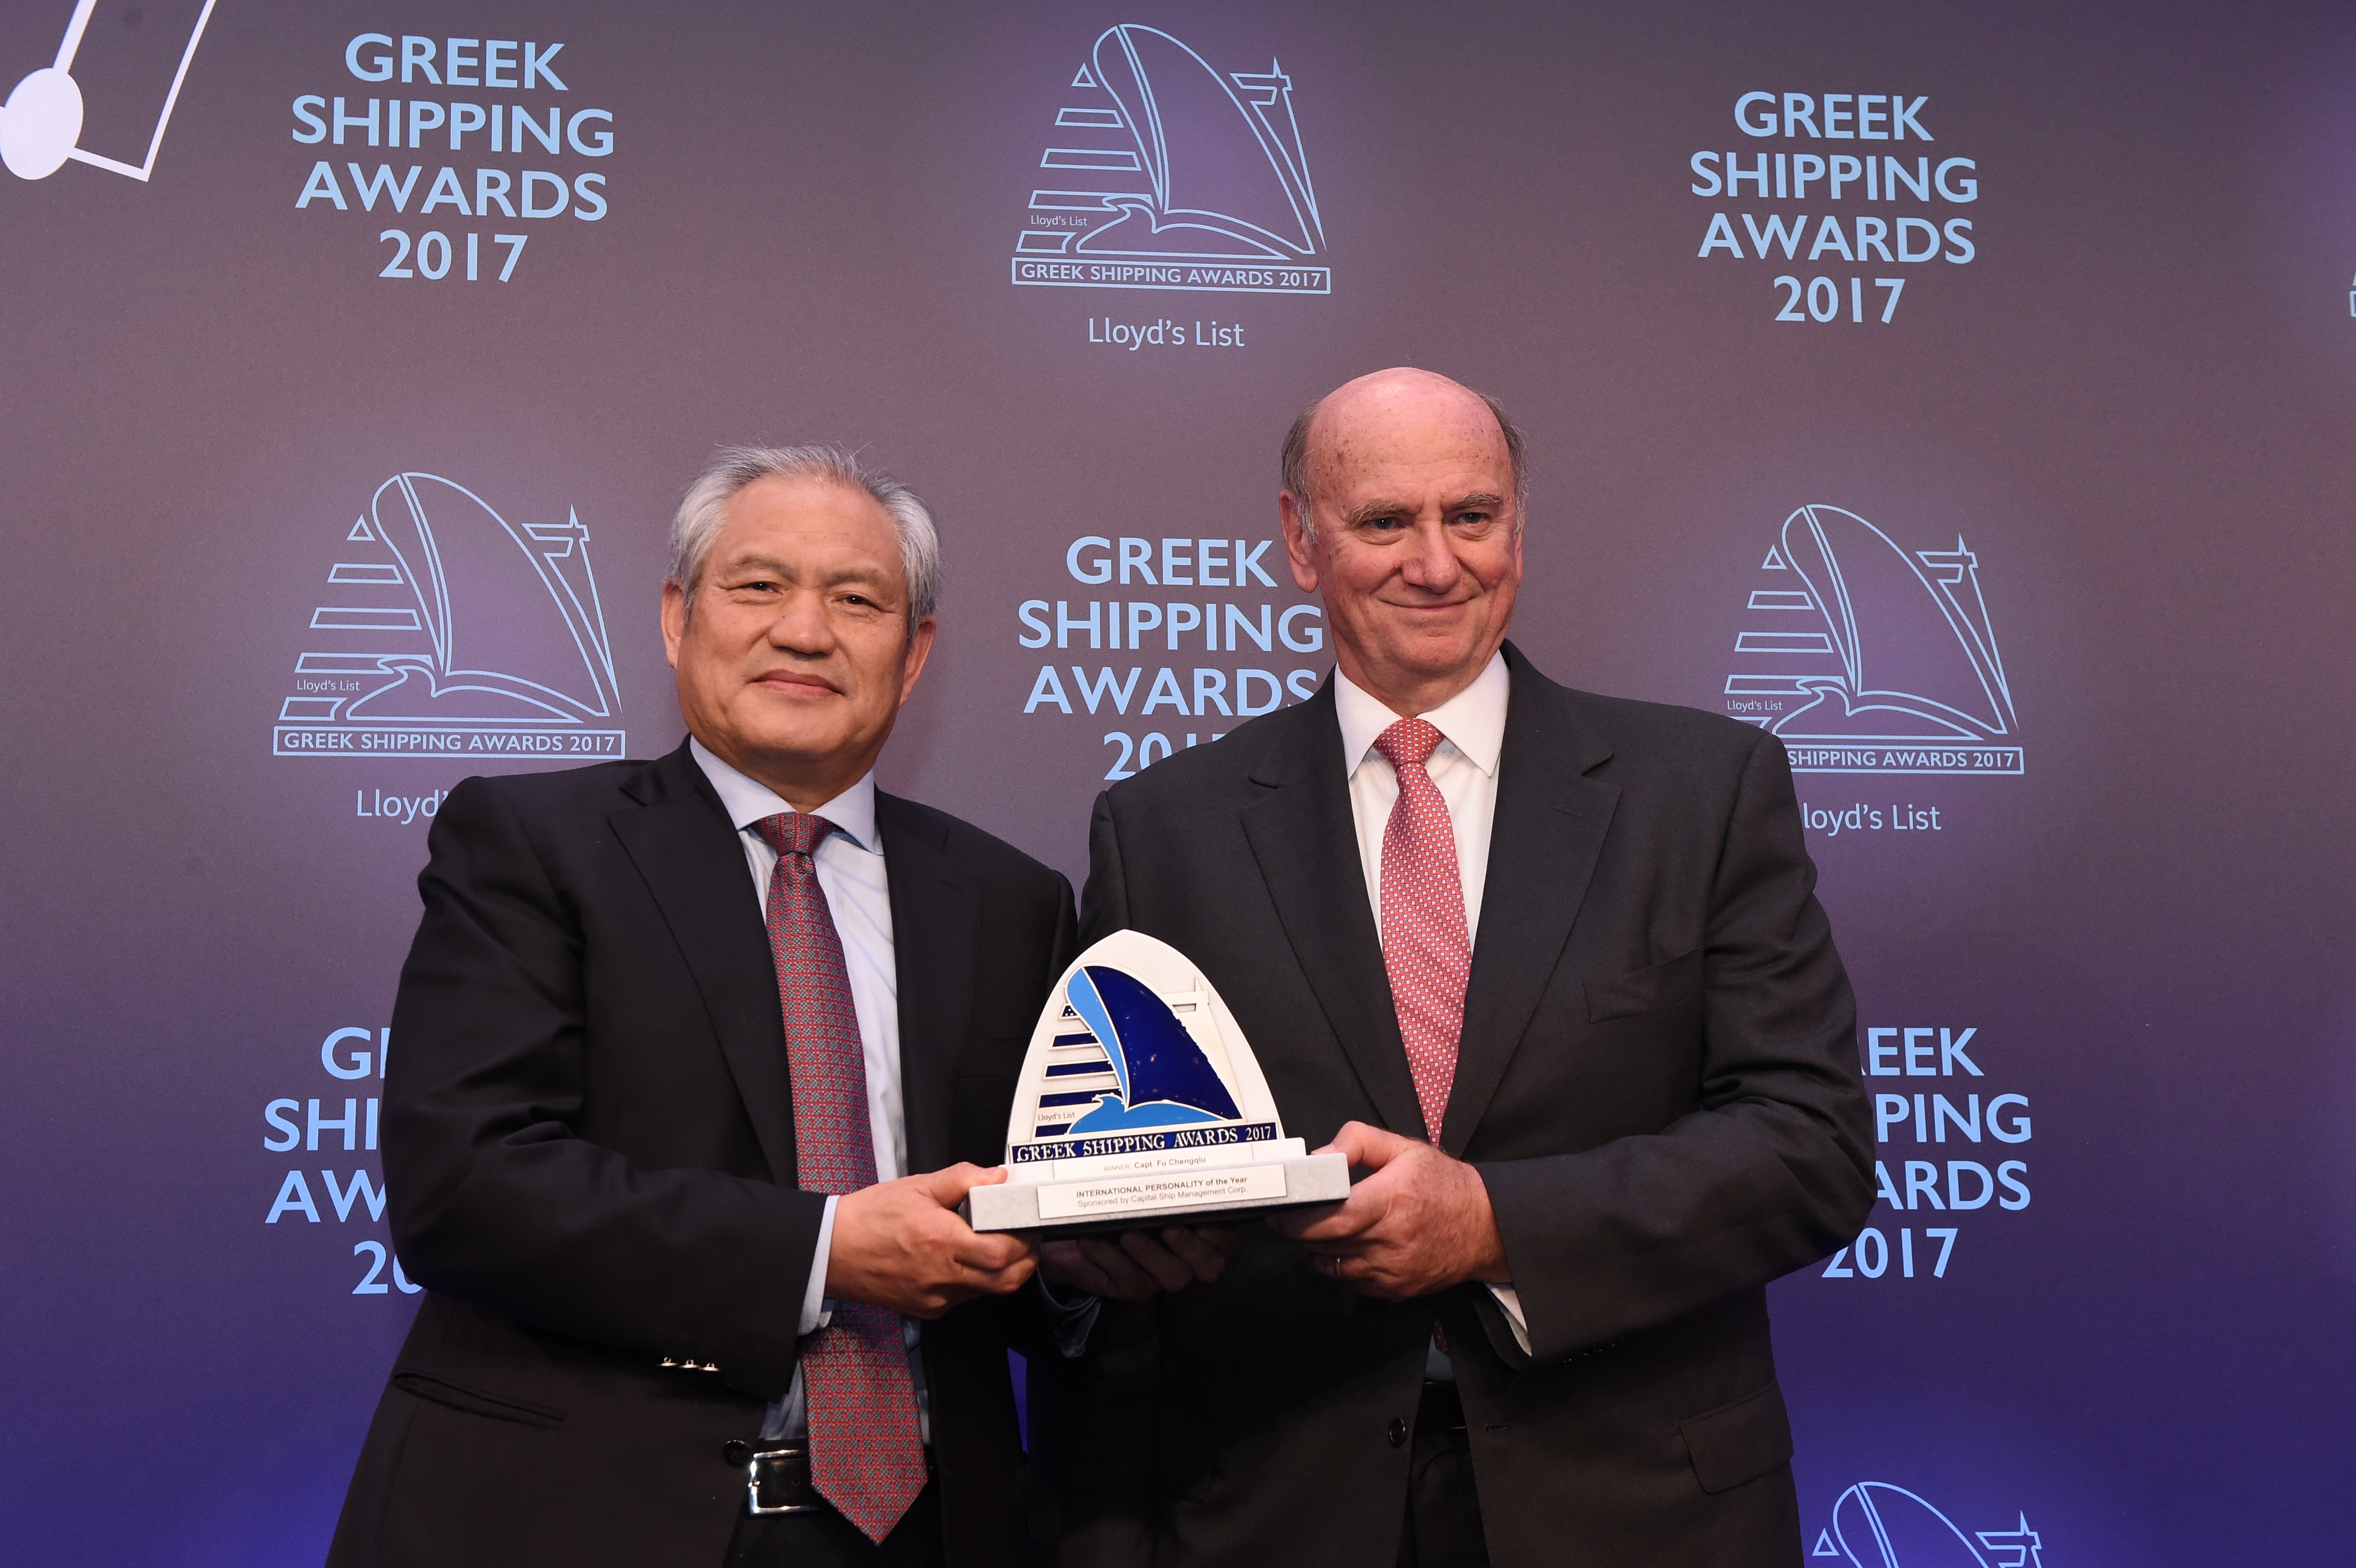 Captain Fu Chengqiu Greek shipping awards